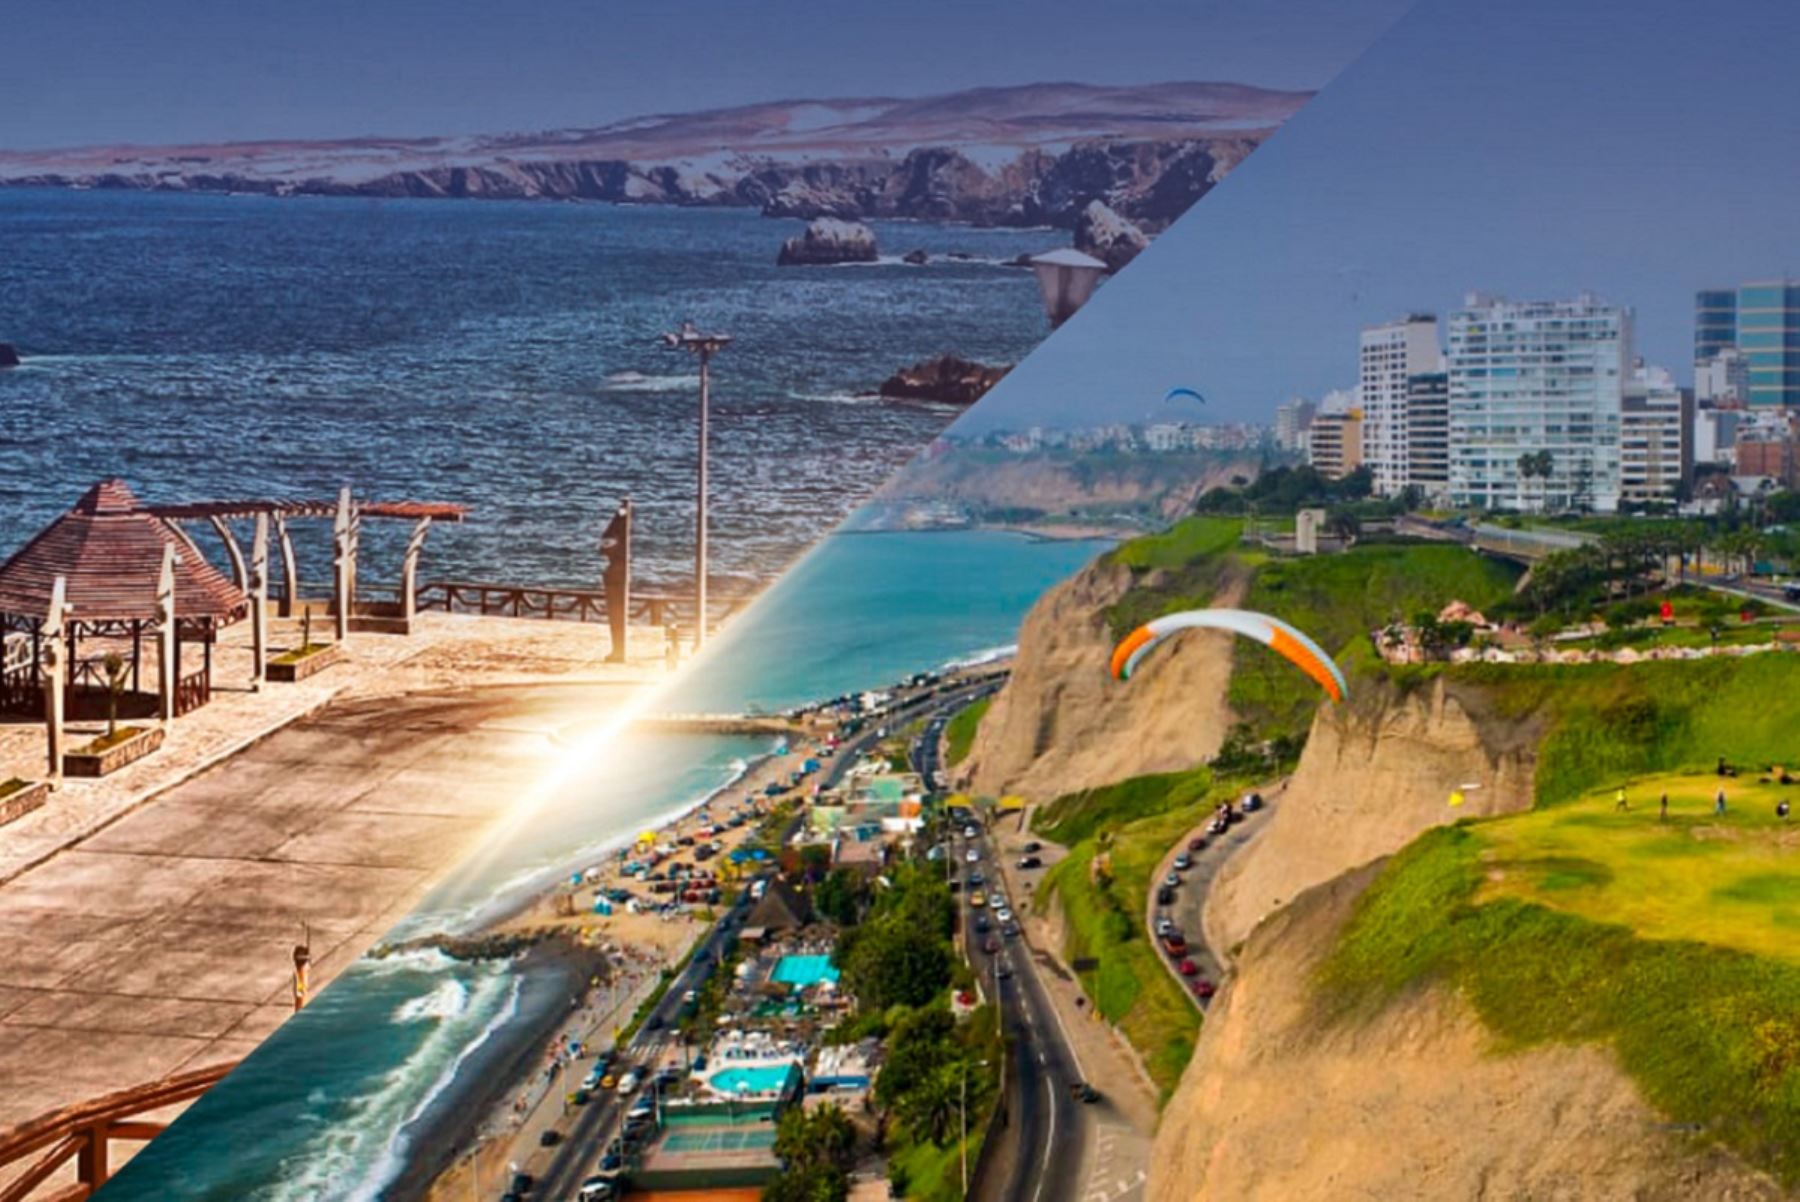 Localidades de Islay en Arequipa y Miraflores en Lima, recibirán apoyo económico del Mincetur para infraestructura turística. Foto: Cortesía.